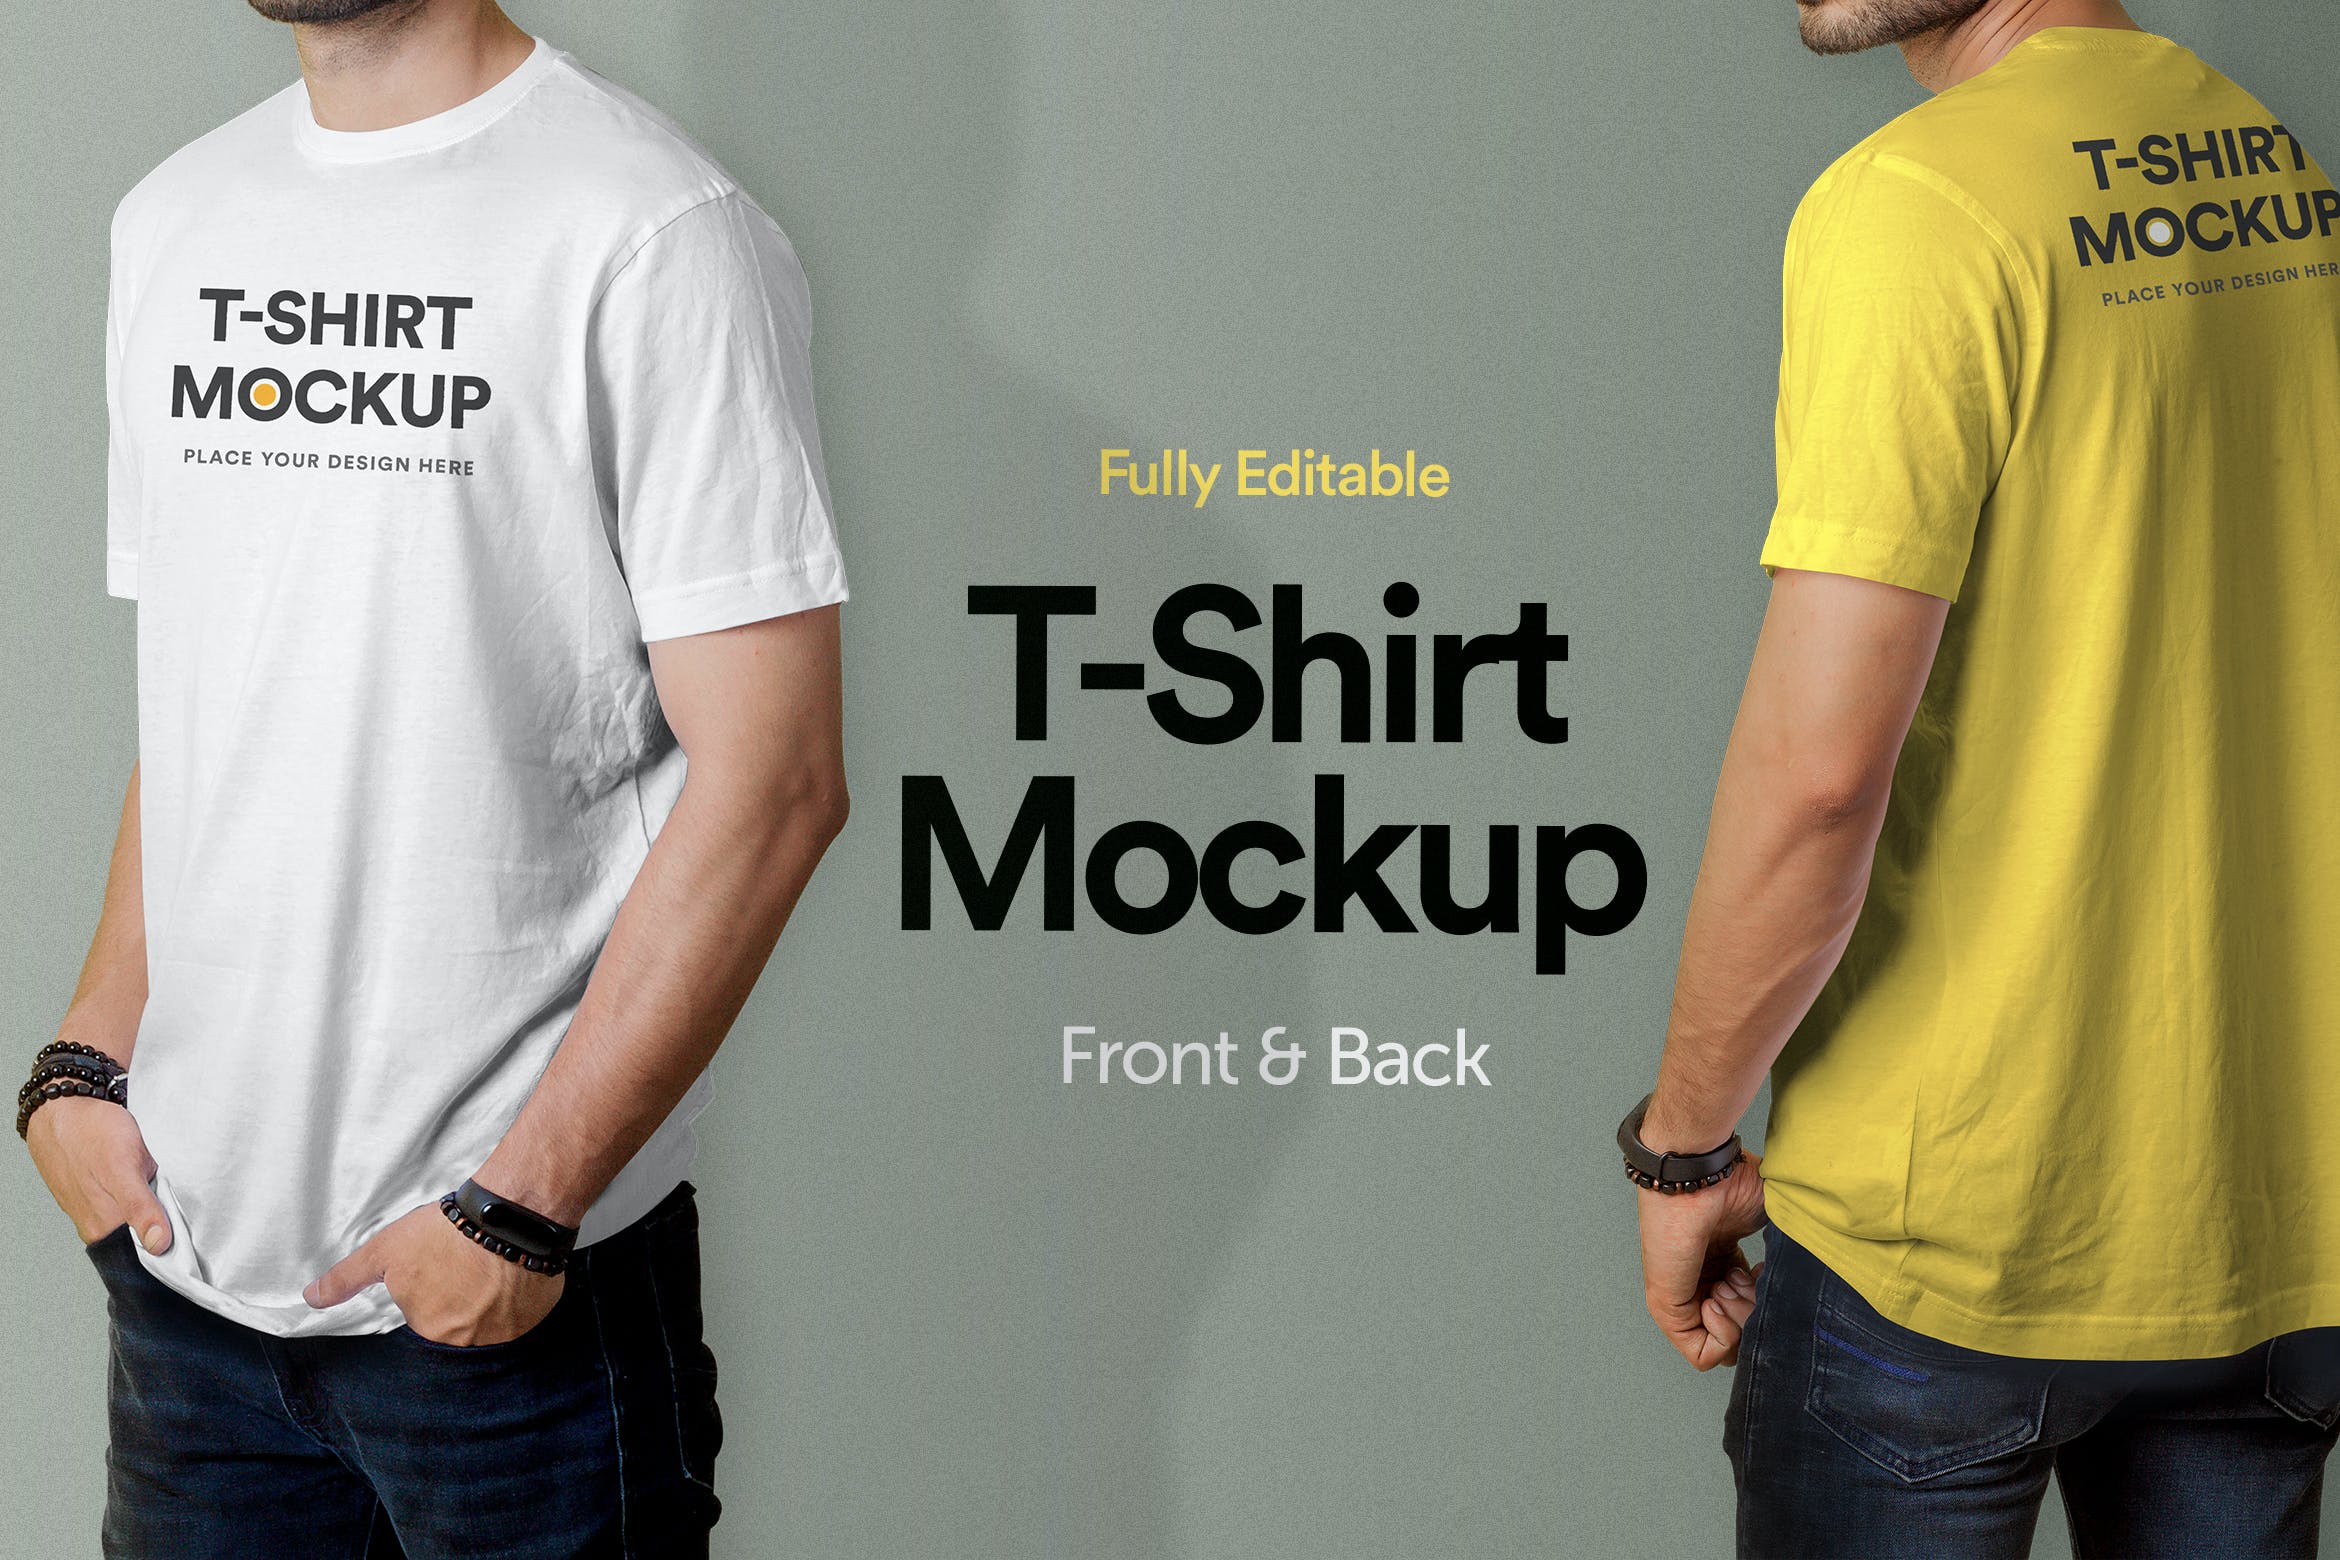 设计展示样机男士T恤图案模板v2 T-Shirt Mockup – Vol 02设计素材模板